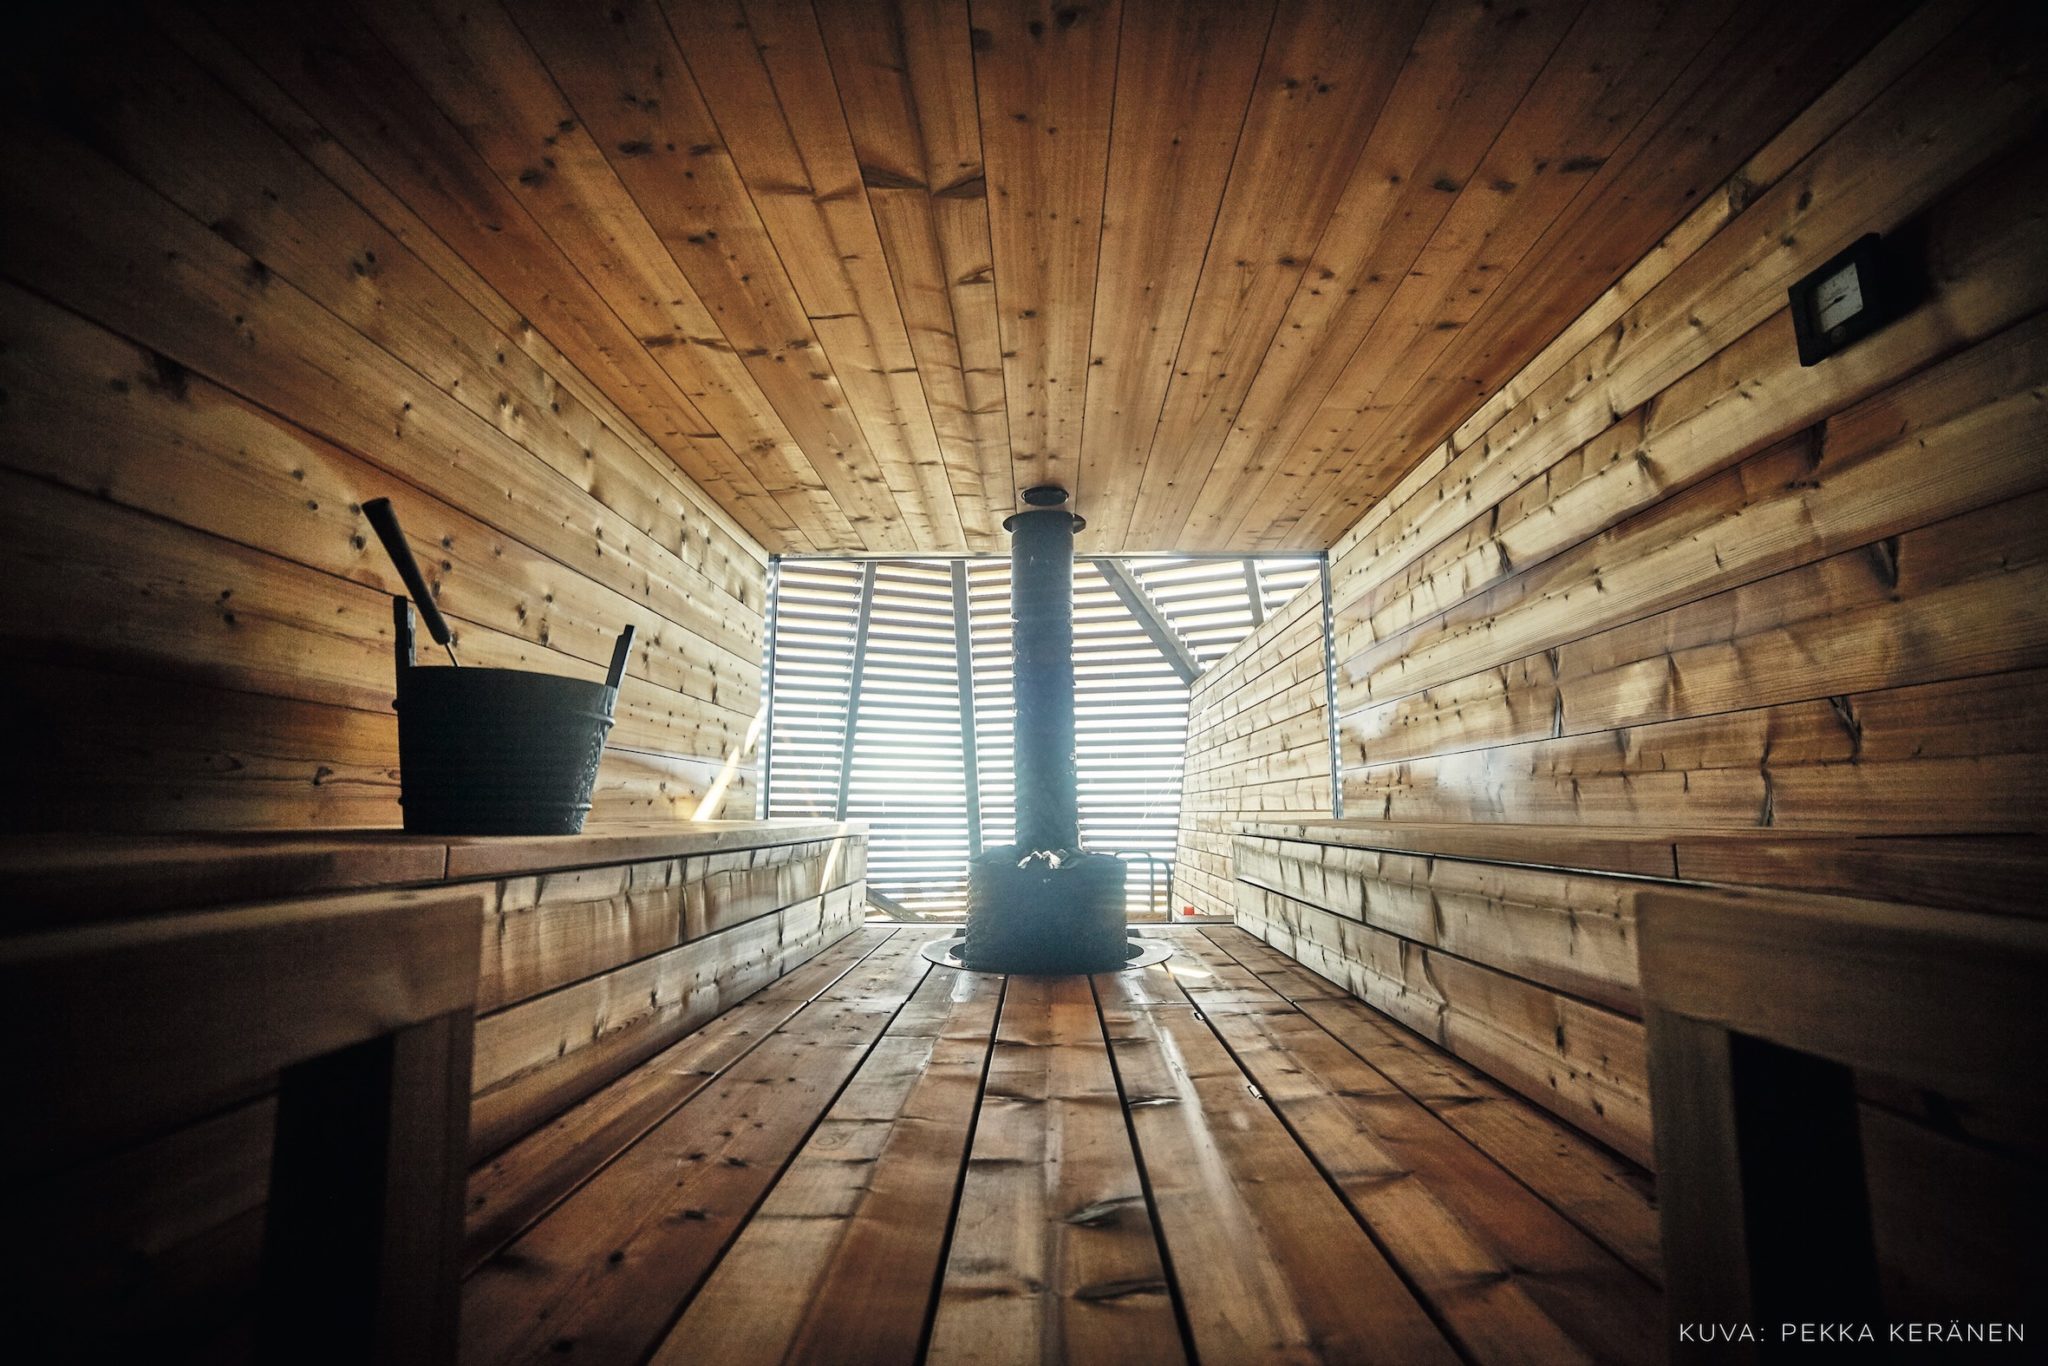 The wooden interiors of Löyly sauna in Helsinki